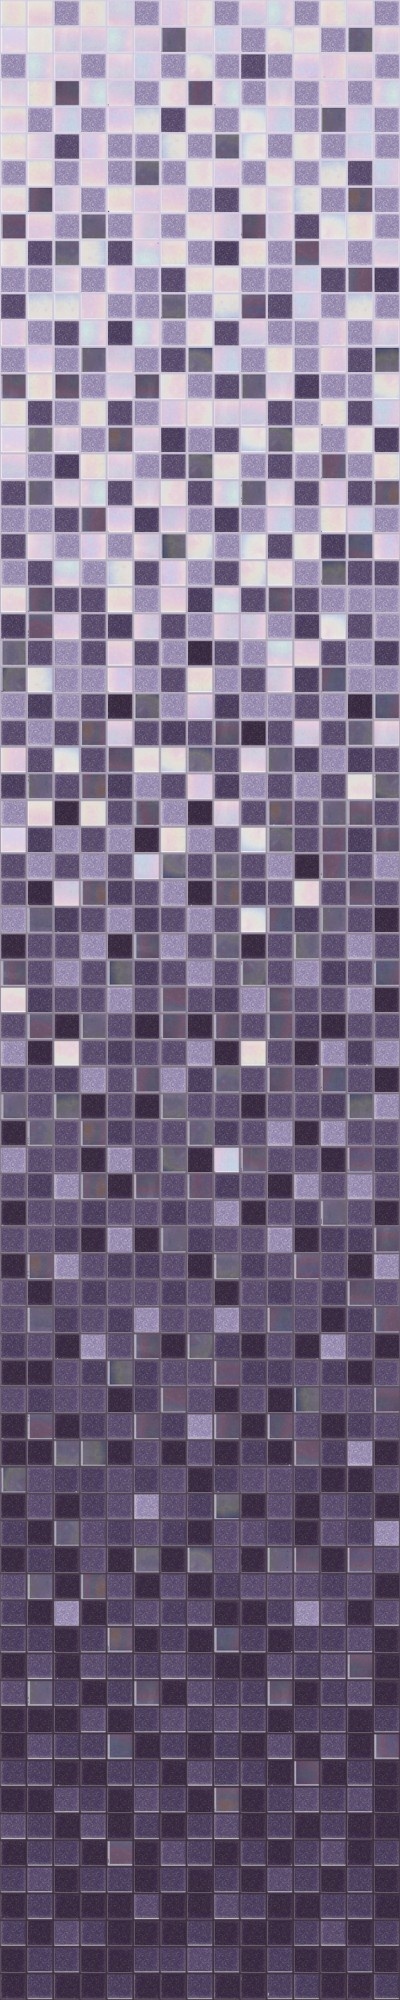 Мозаика плитка D-CORE растяжка  1635*327 мм. RI-07